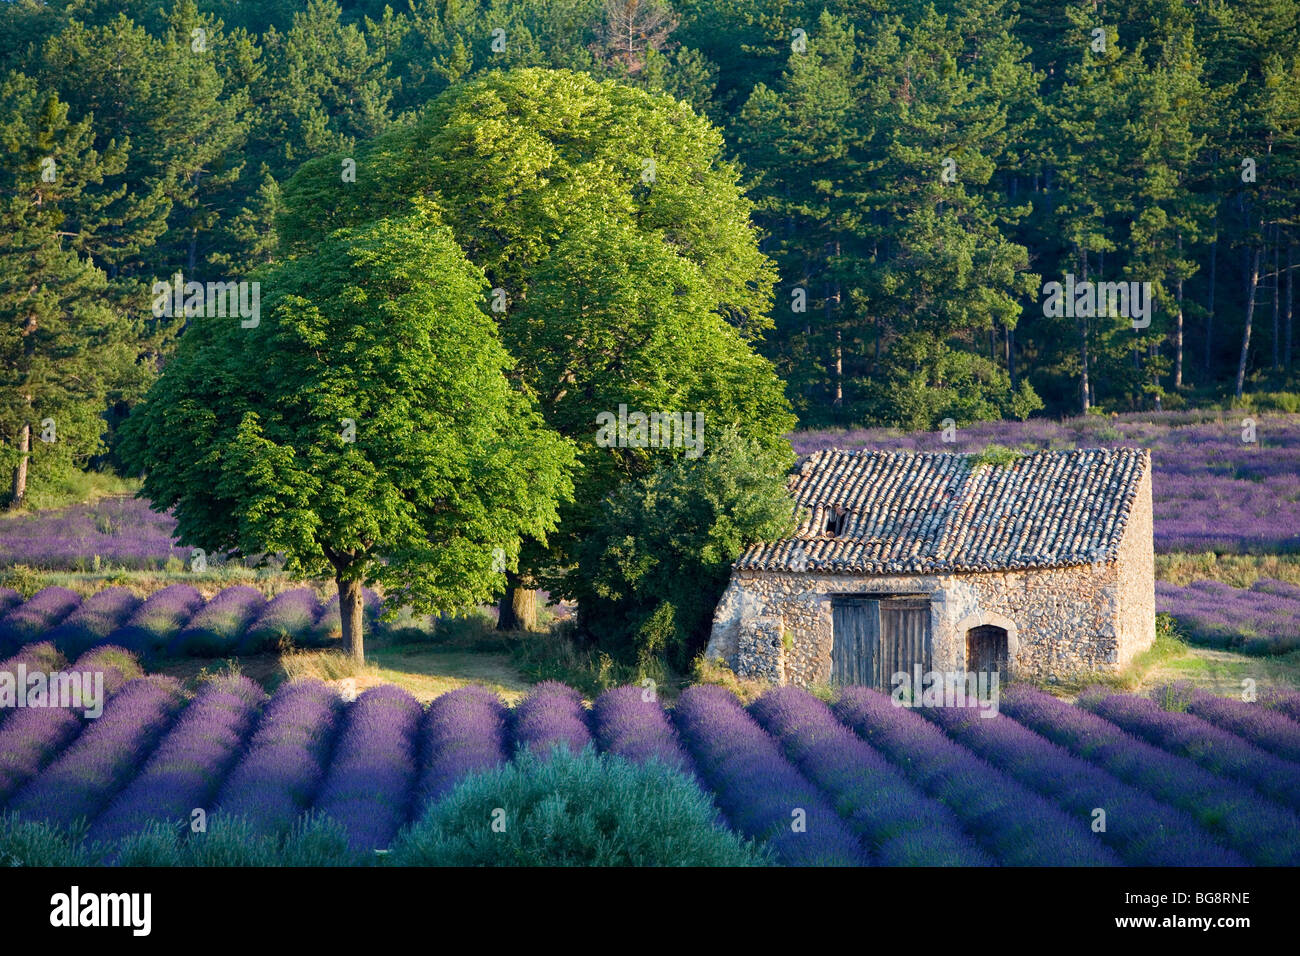 France, Alpes de Haute Provence, Verdon Regional Nature Park, Plateau de Valensole, Puimoisson, cabanon in a lavender field Stock Photo